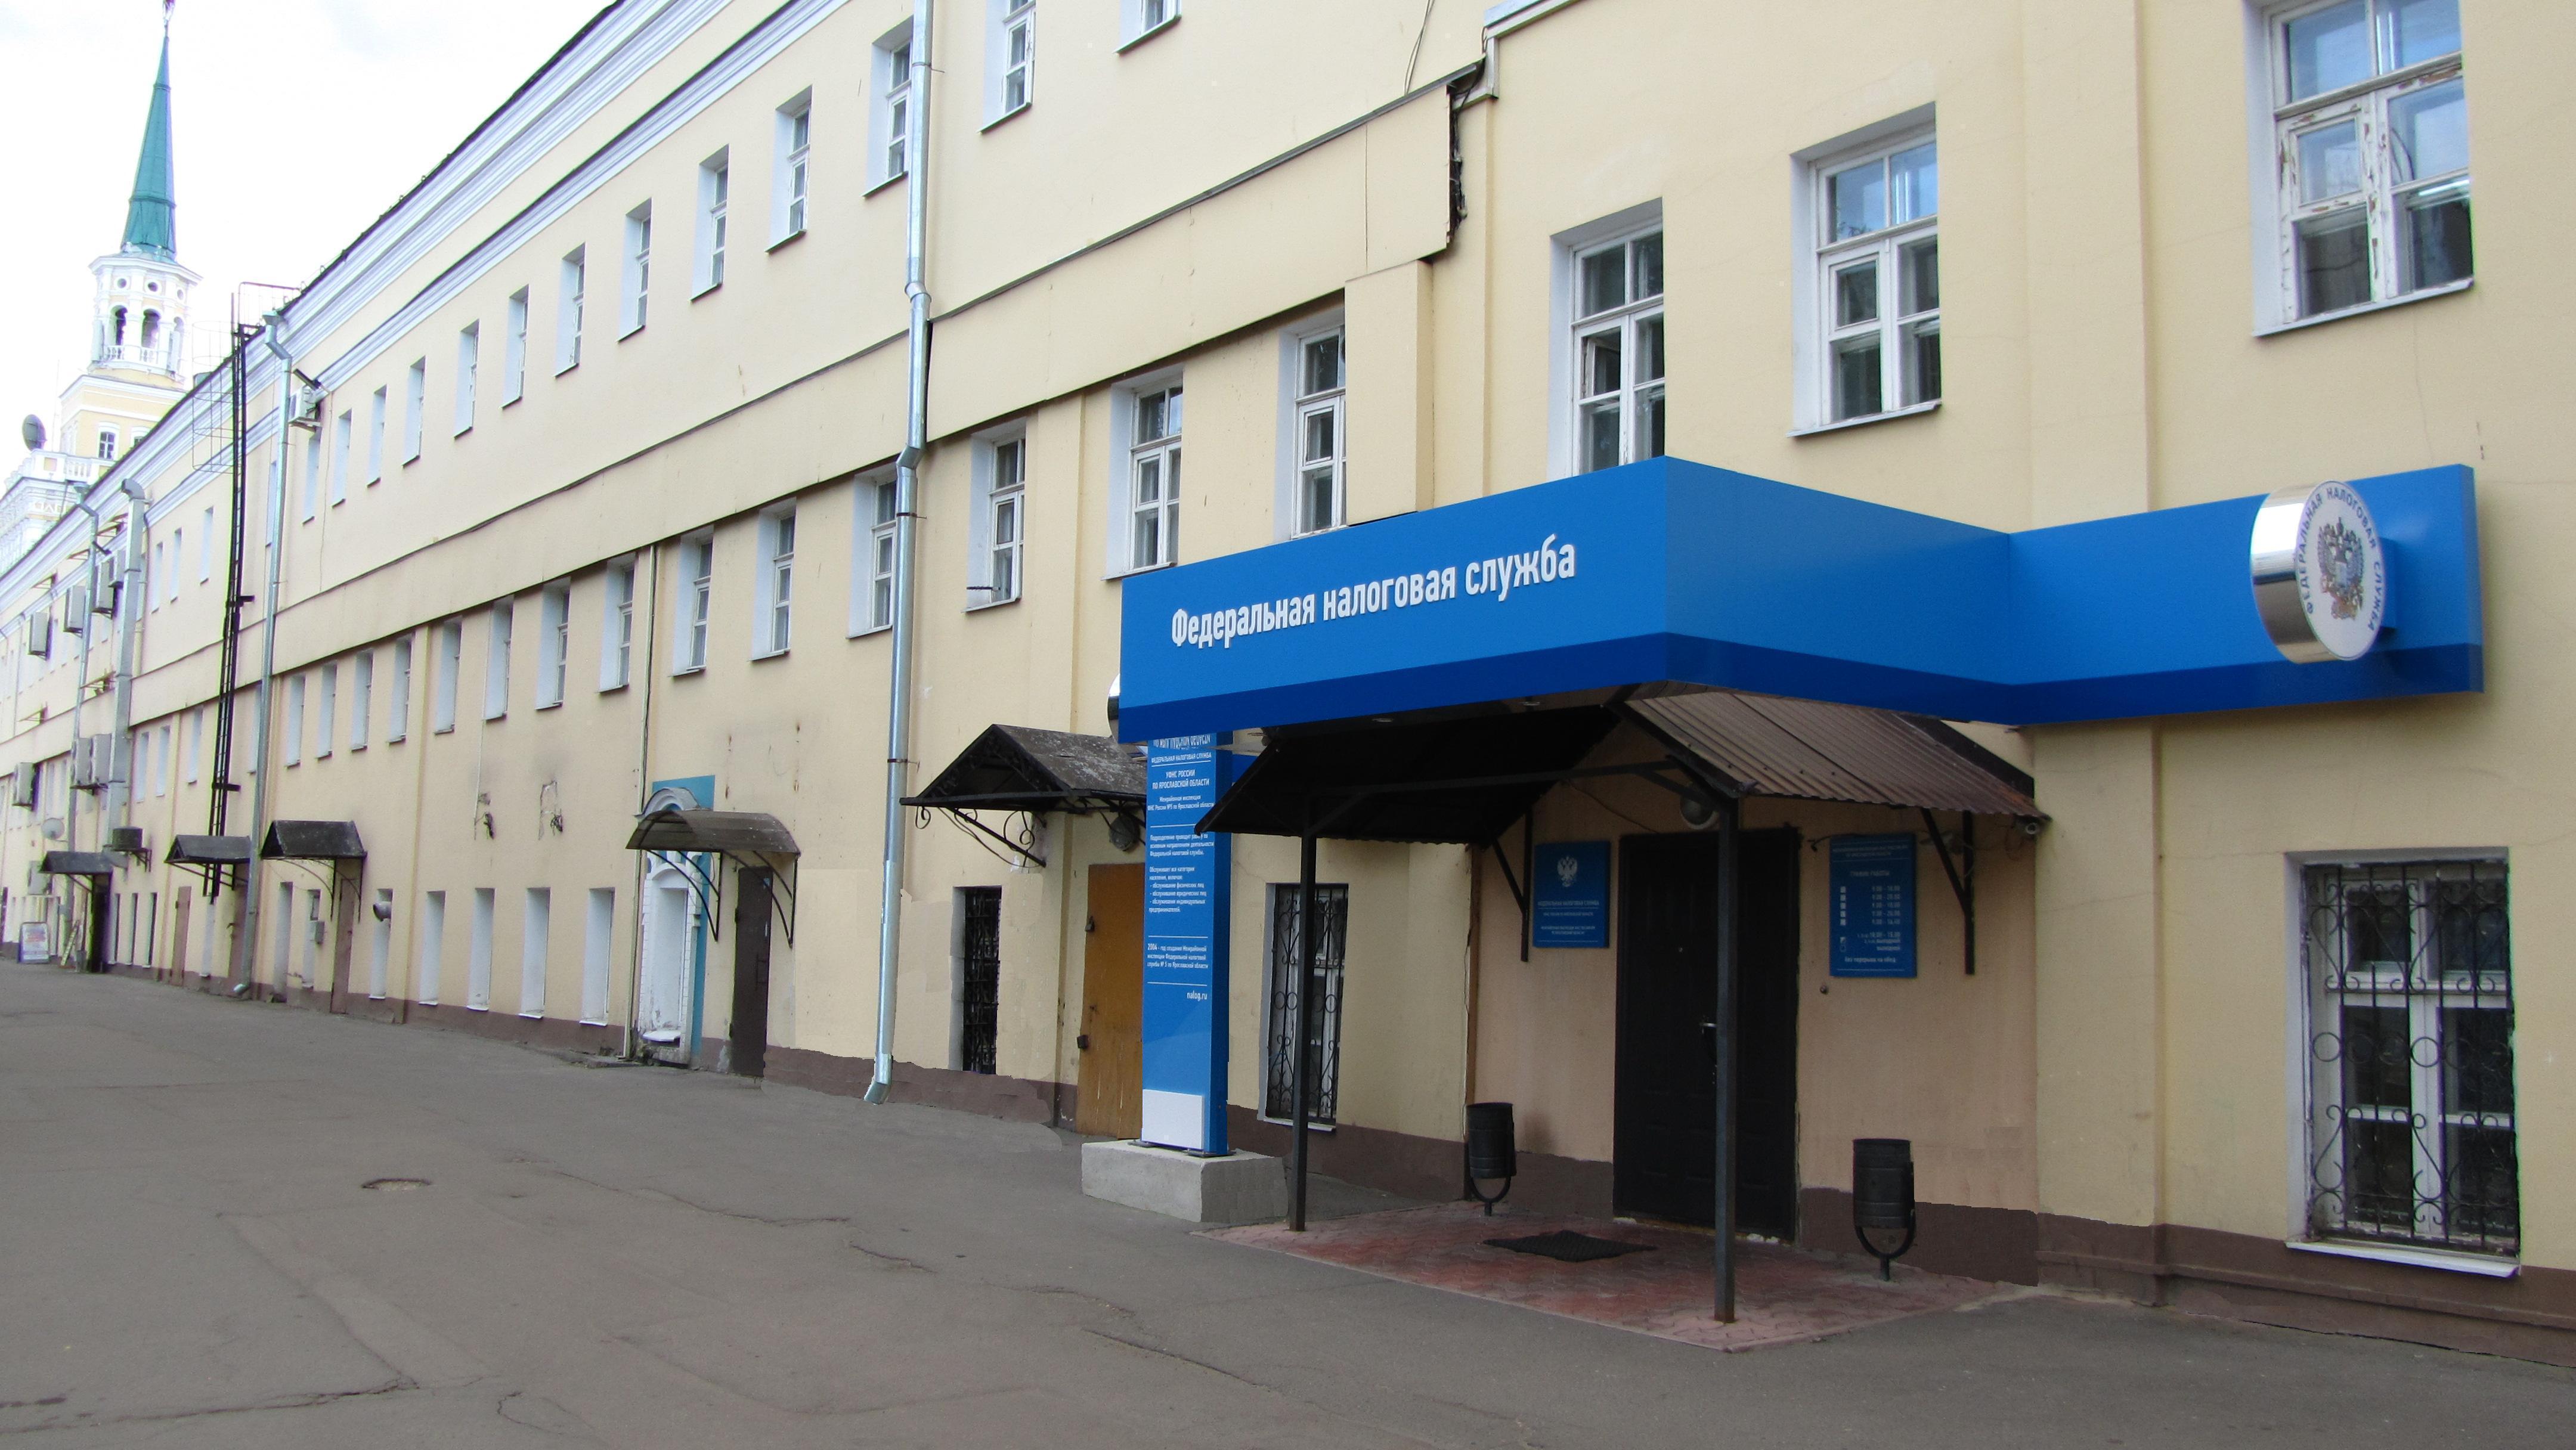 Вход в Инспекцию располагается со стороны двора в историческом здании по адресу г.Ярославль, ул.Свободы, д.46, более известном в регионе как Вознесенские казармы